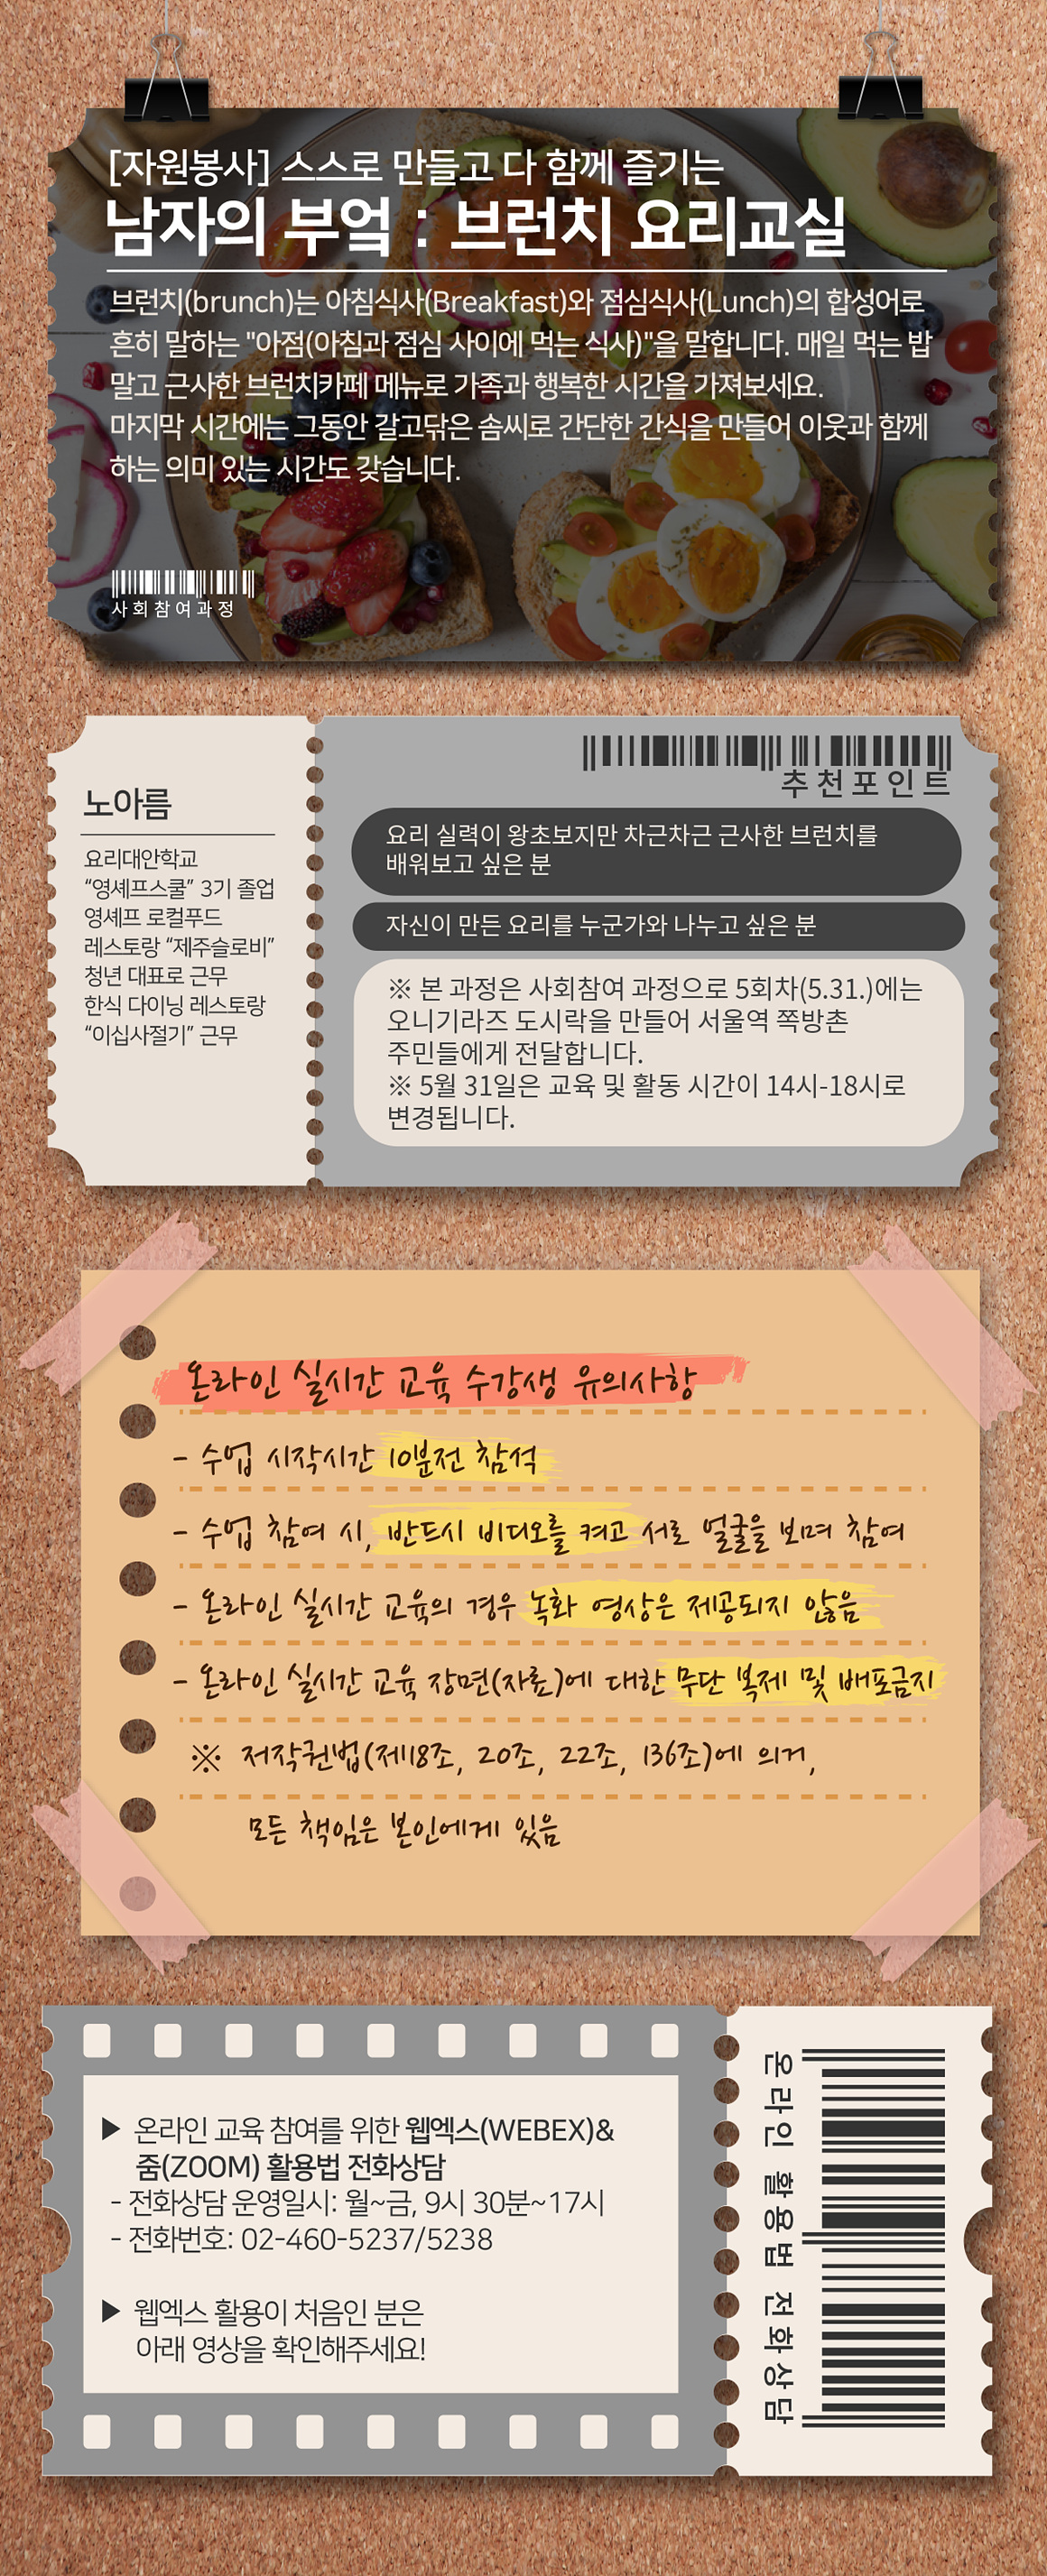 사회참여02_자원봉사_남자의+부엌+브런치+요리교실+copy.jpg